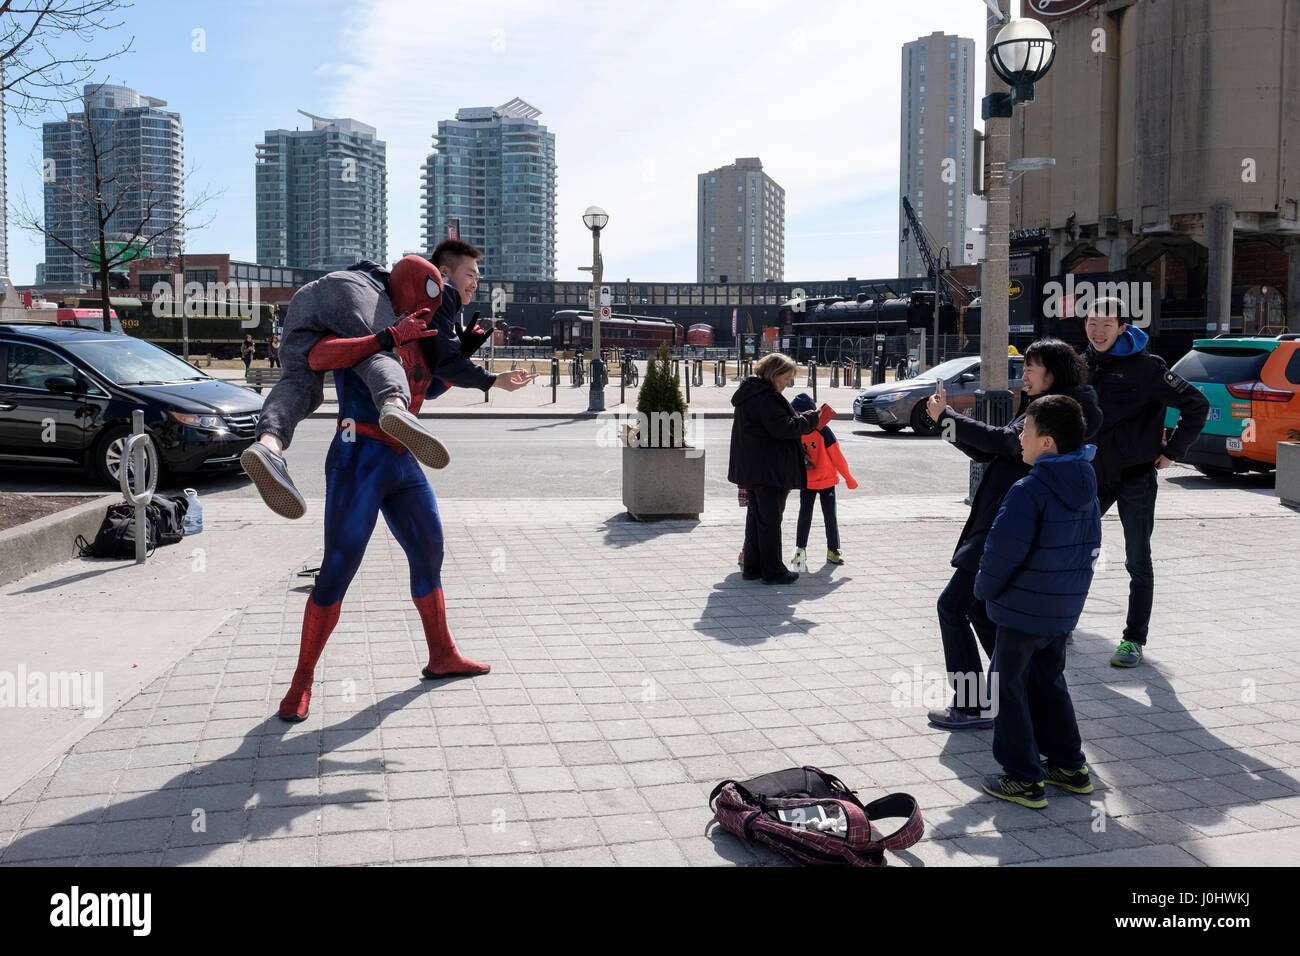 Straßenkünstler, verkleidet als Spider-man, posiert für Touristenfotos, hebt einen asiatischen Touristen vom Boden, Street Life, Toronto, Ontario, Kanada Stockfoto